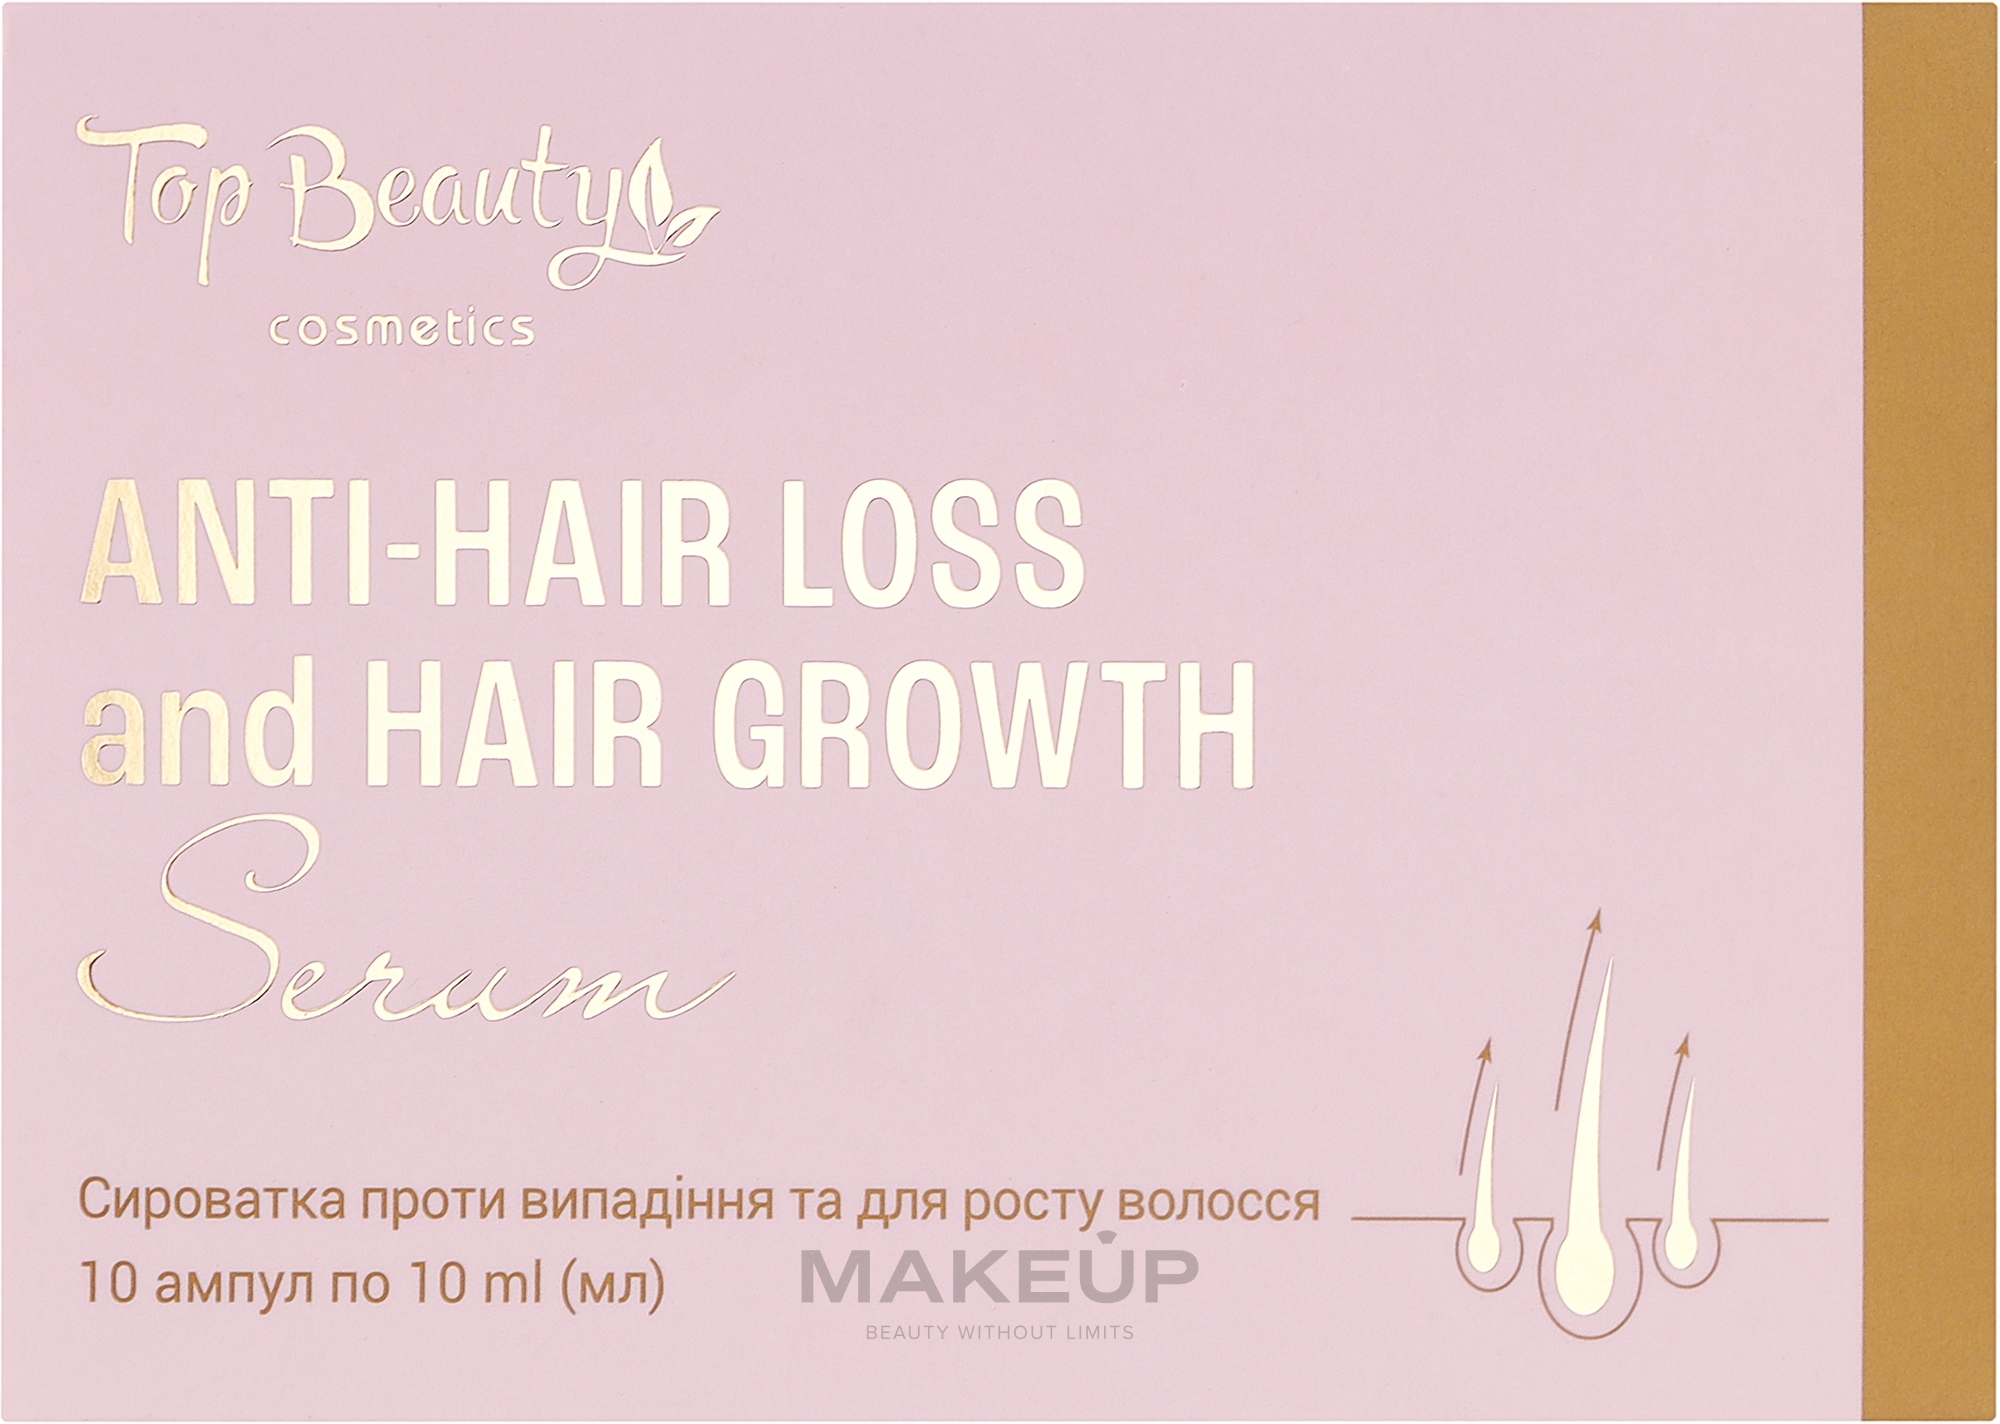 Сироватка проти випадіння та для росту волосся - Top Beauty Anti-Hair Loss and Hair Growth Serum — фото 10x10ml